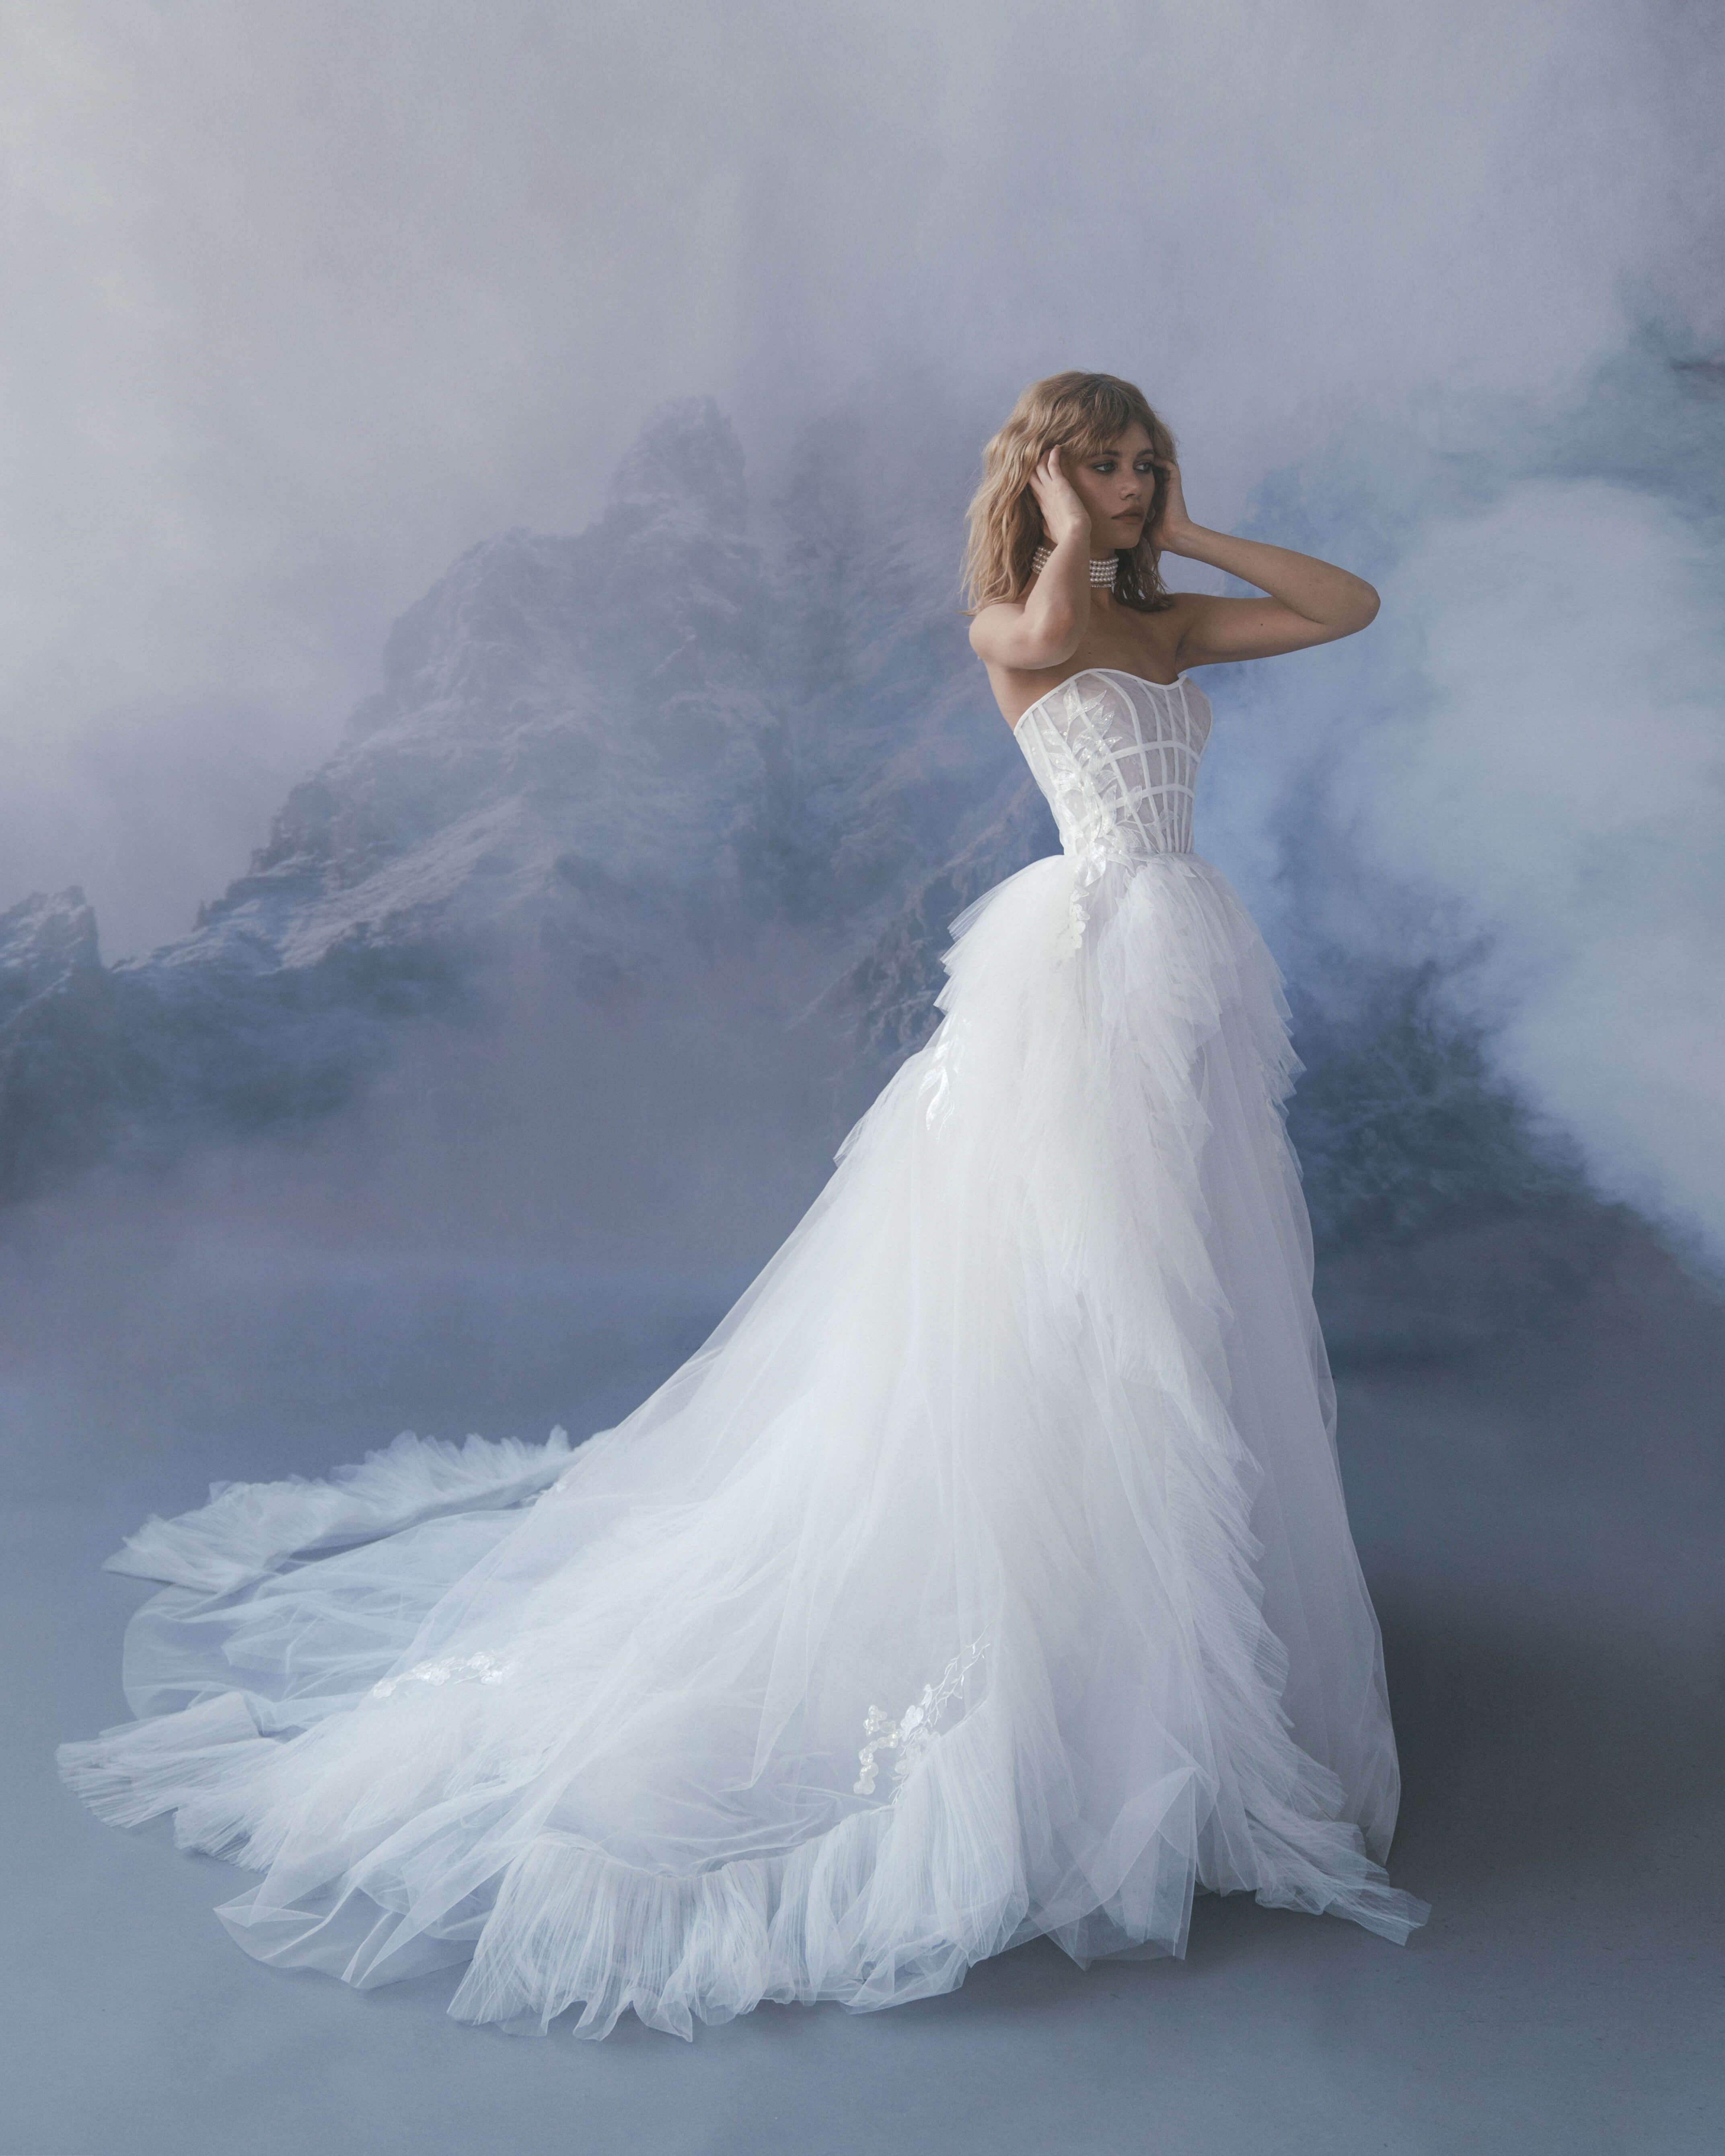 Купить свадебное платье «Соланж» Бламмо Биамо из коллекции Сказка 2022 года в салоне «Мэри Трюфель»